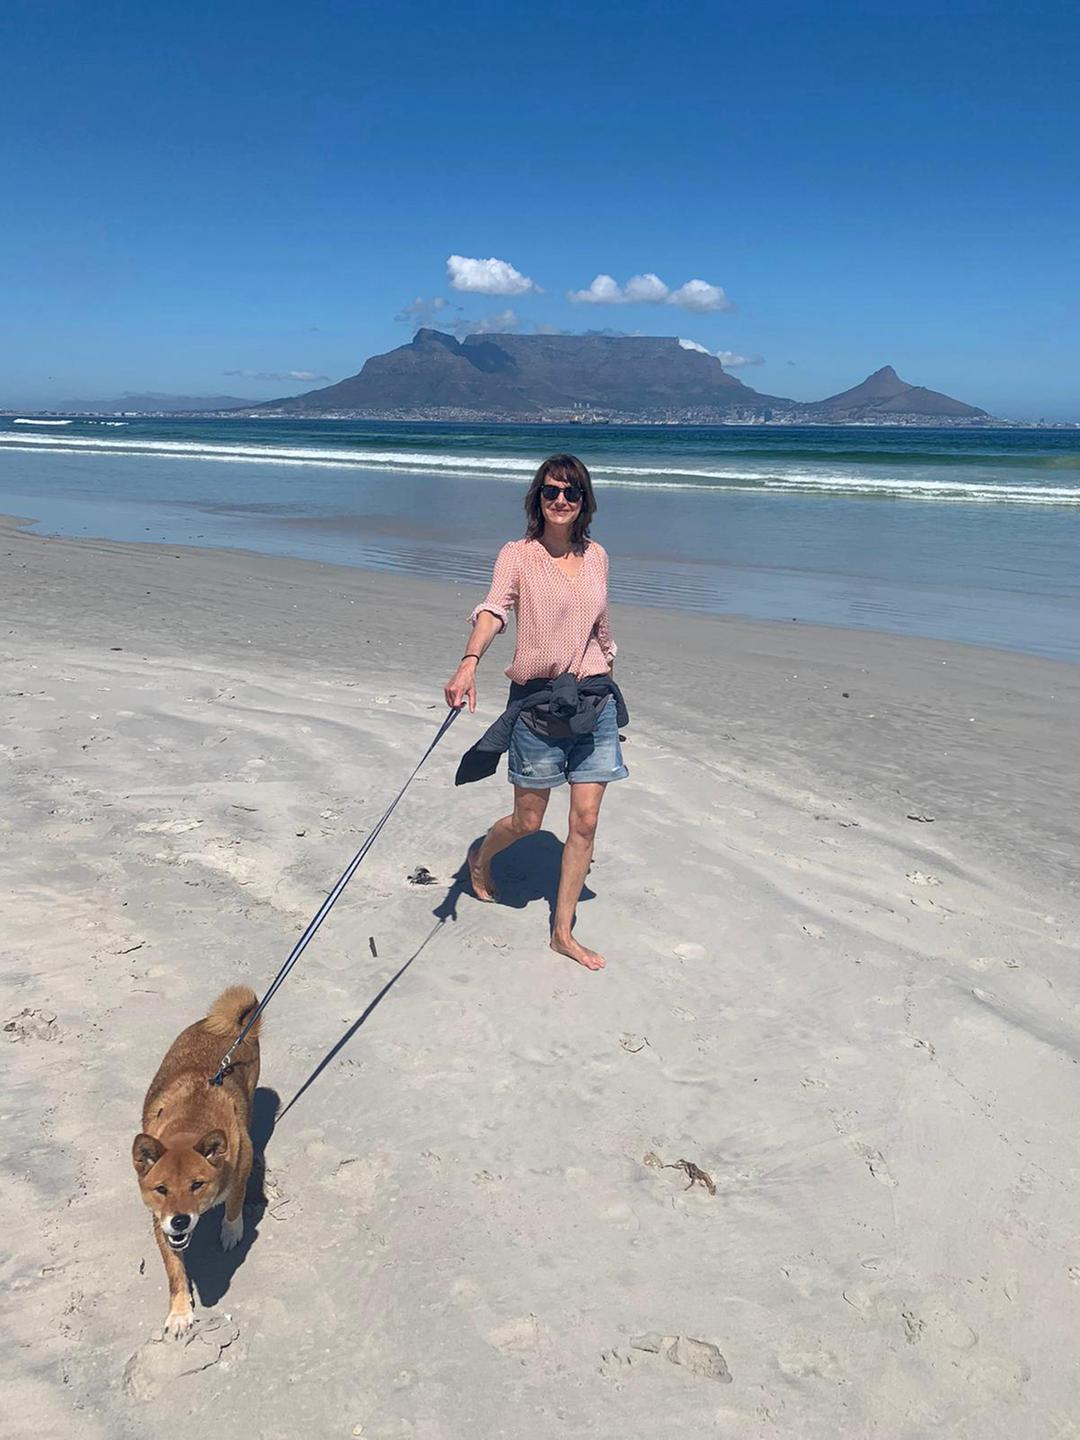 Anja Medau am Strand mit einem Hund an der Leine